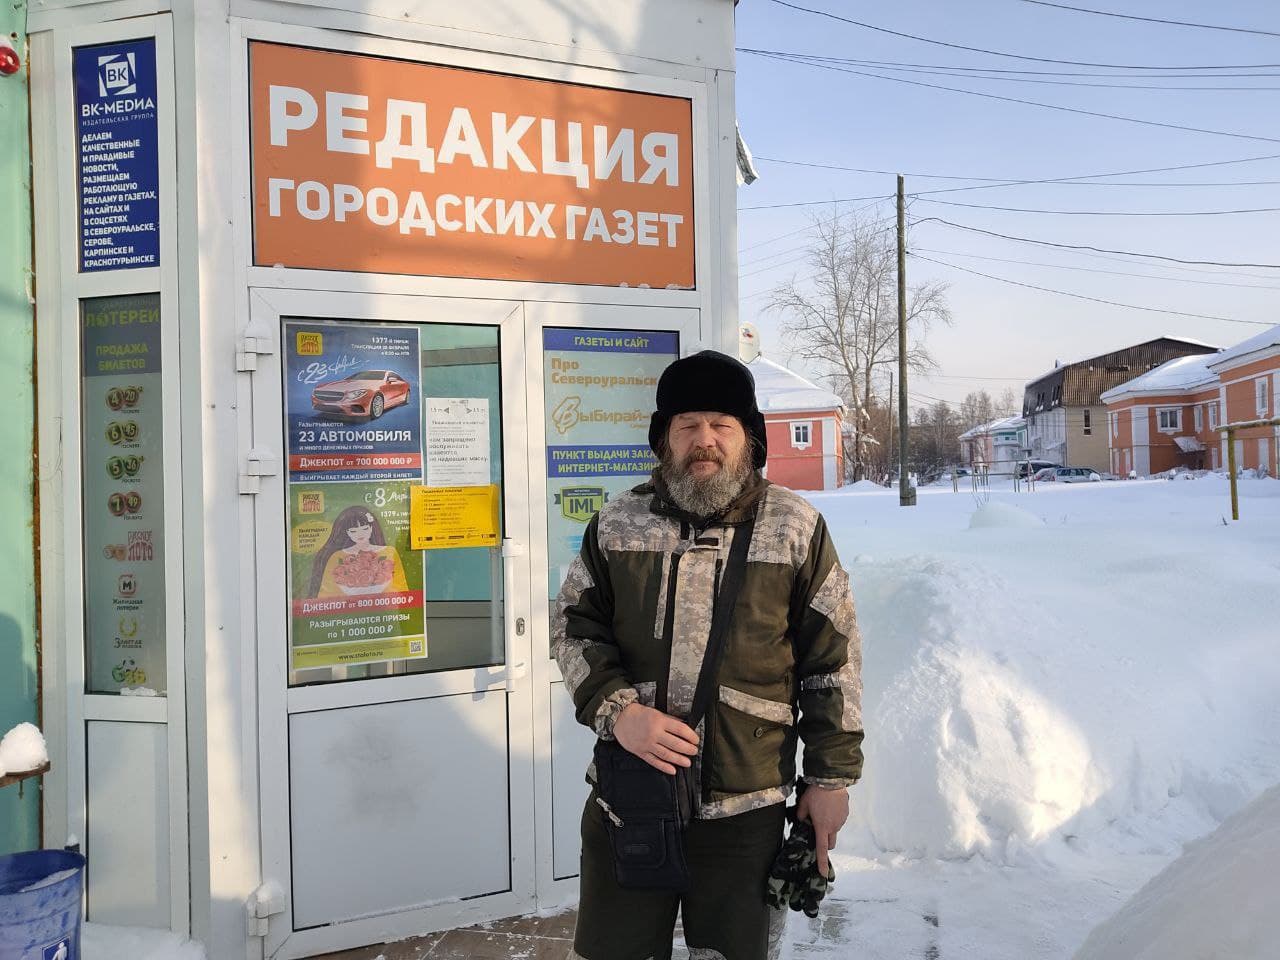 Здесь был Андрей. Путешественник, который идет пешком по России, посетил Североуральск